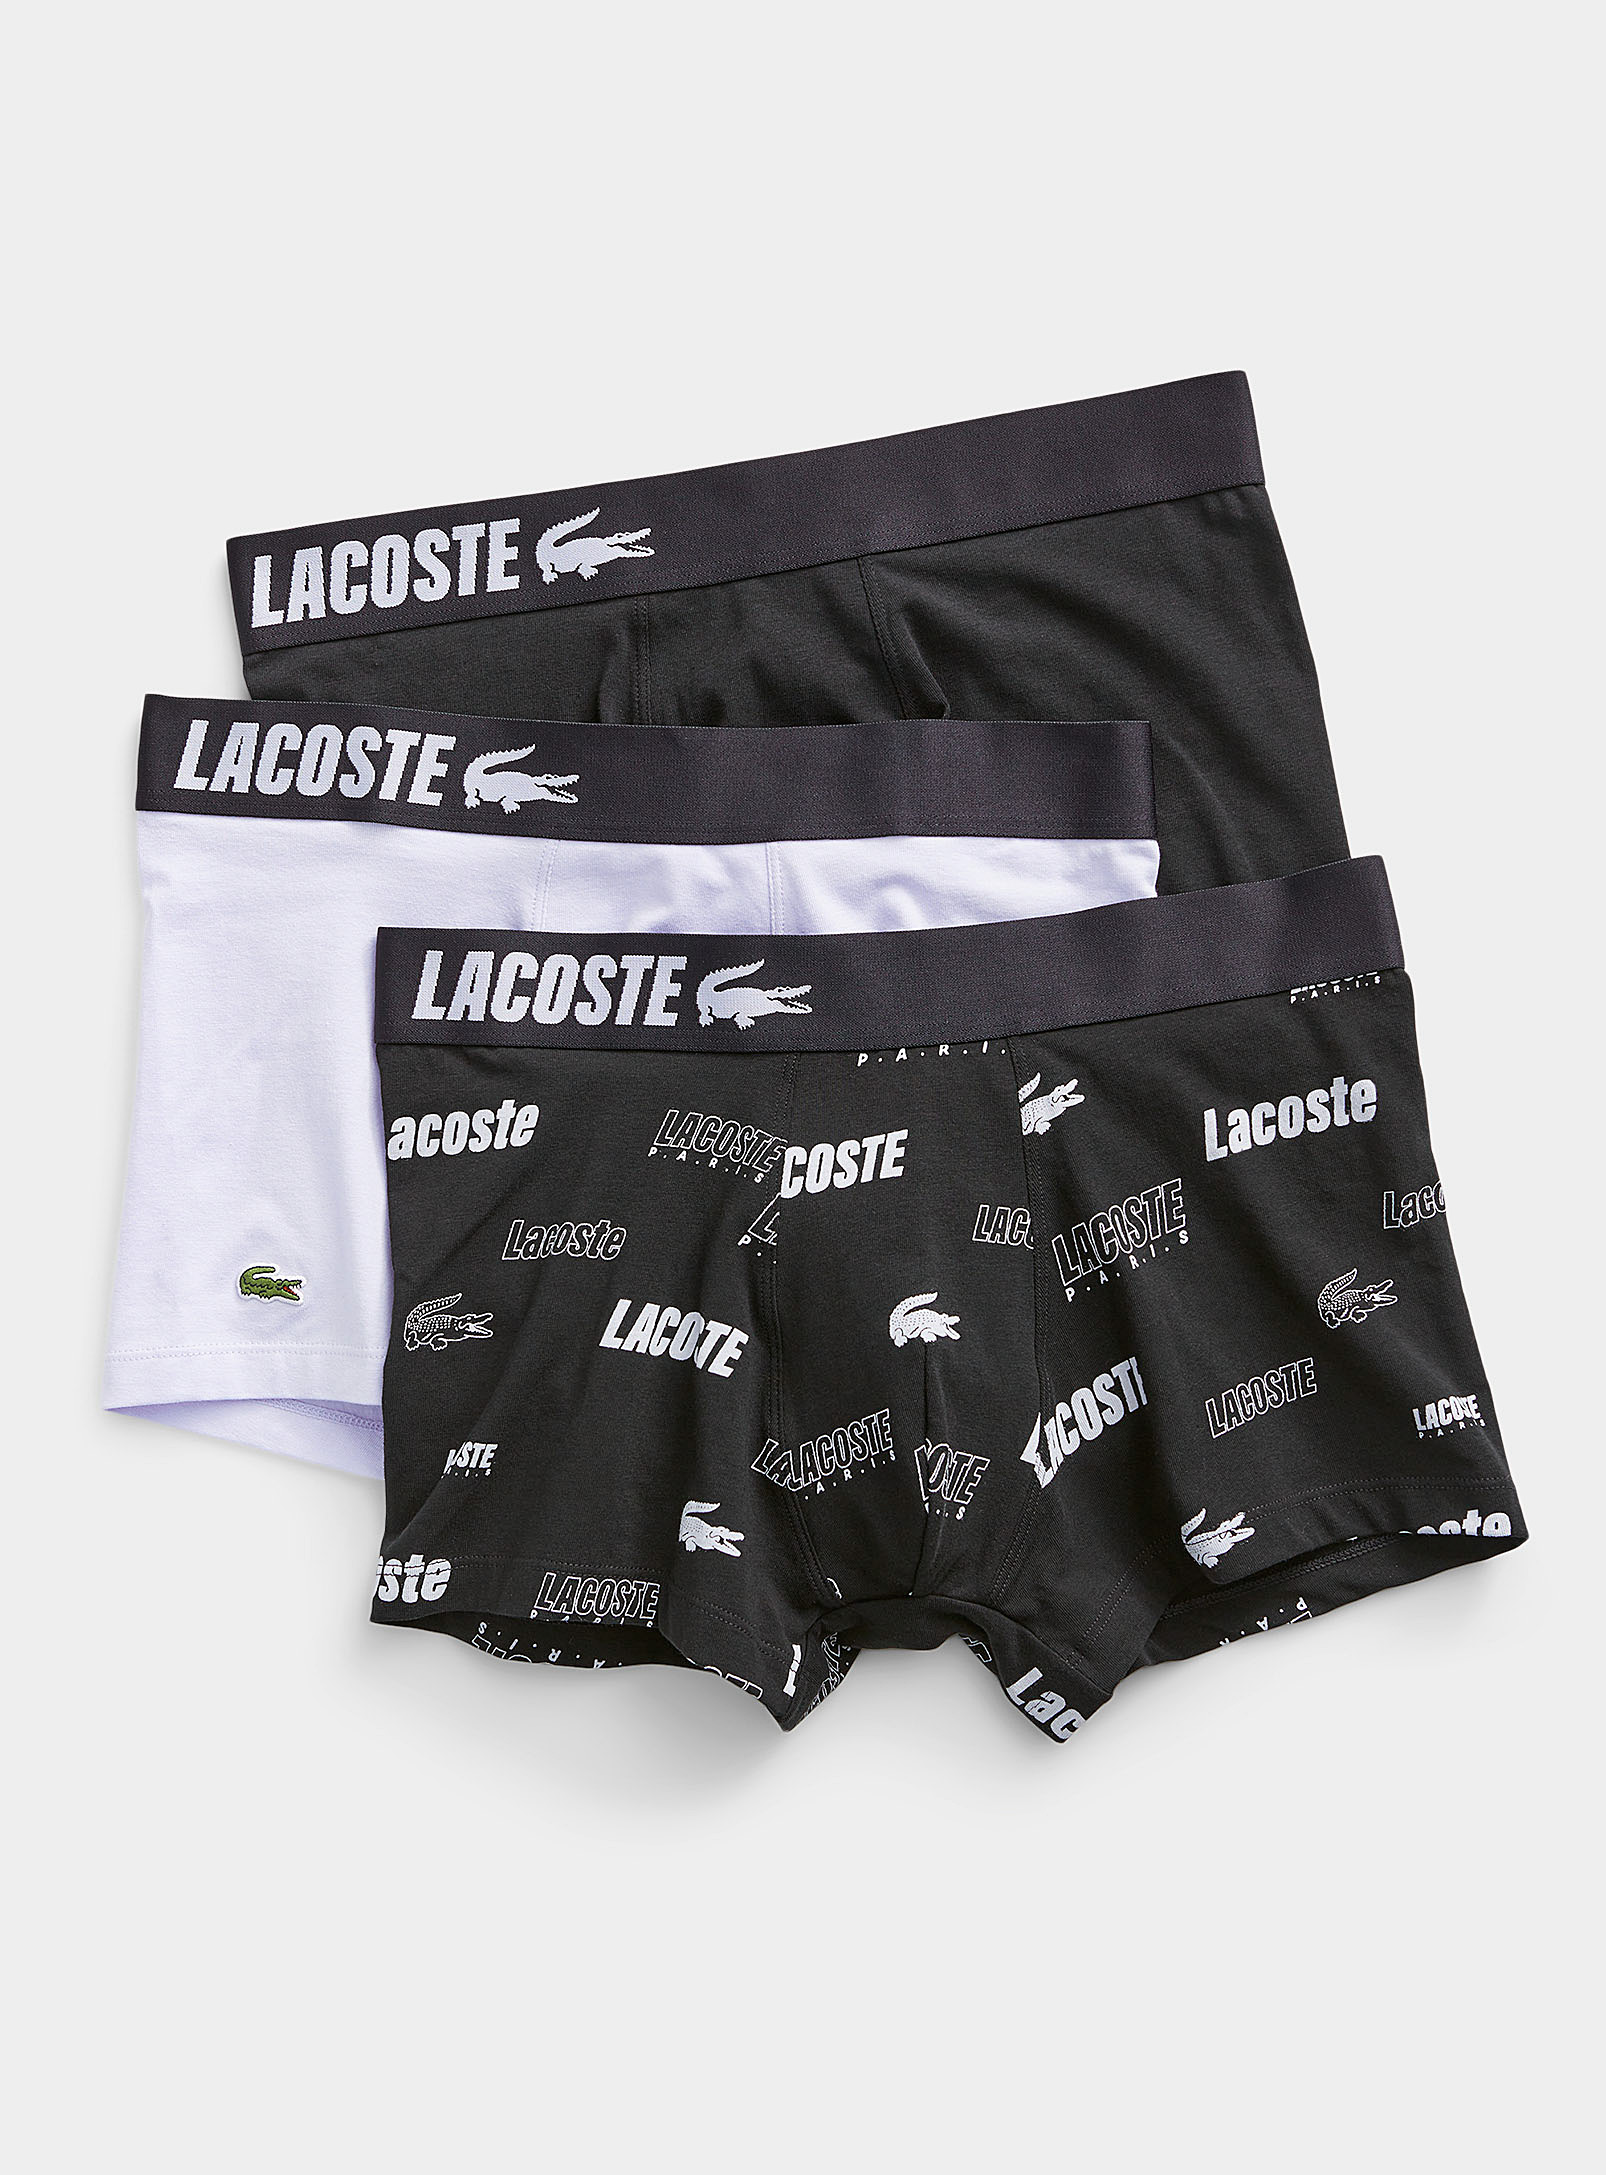 Lacoste - Men's Black-and-white logo trunks 3-pack